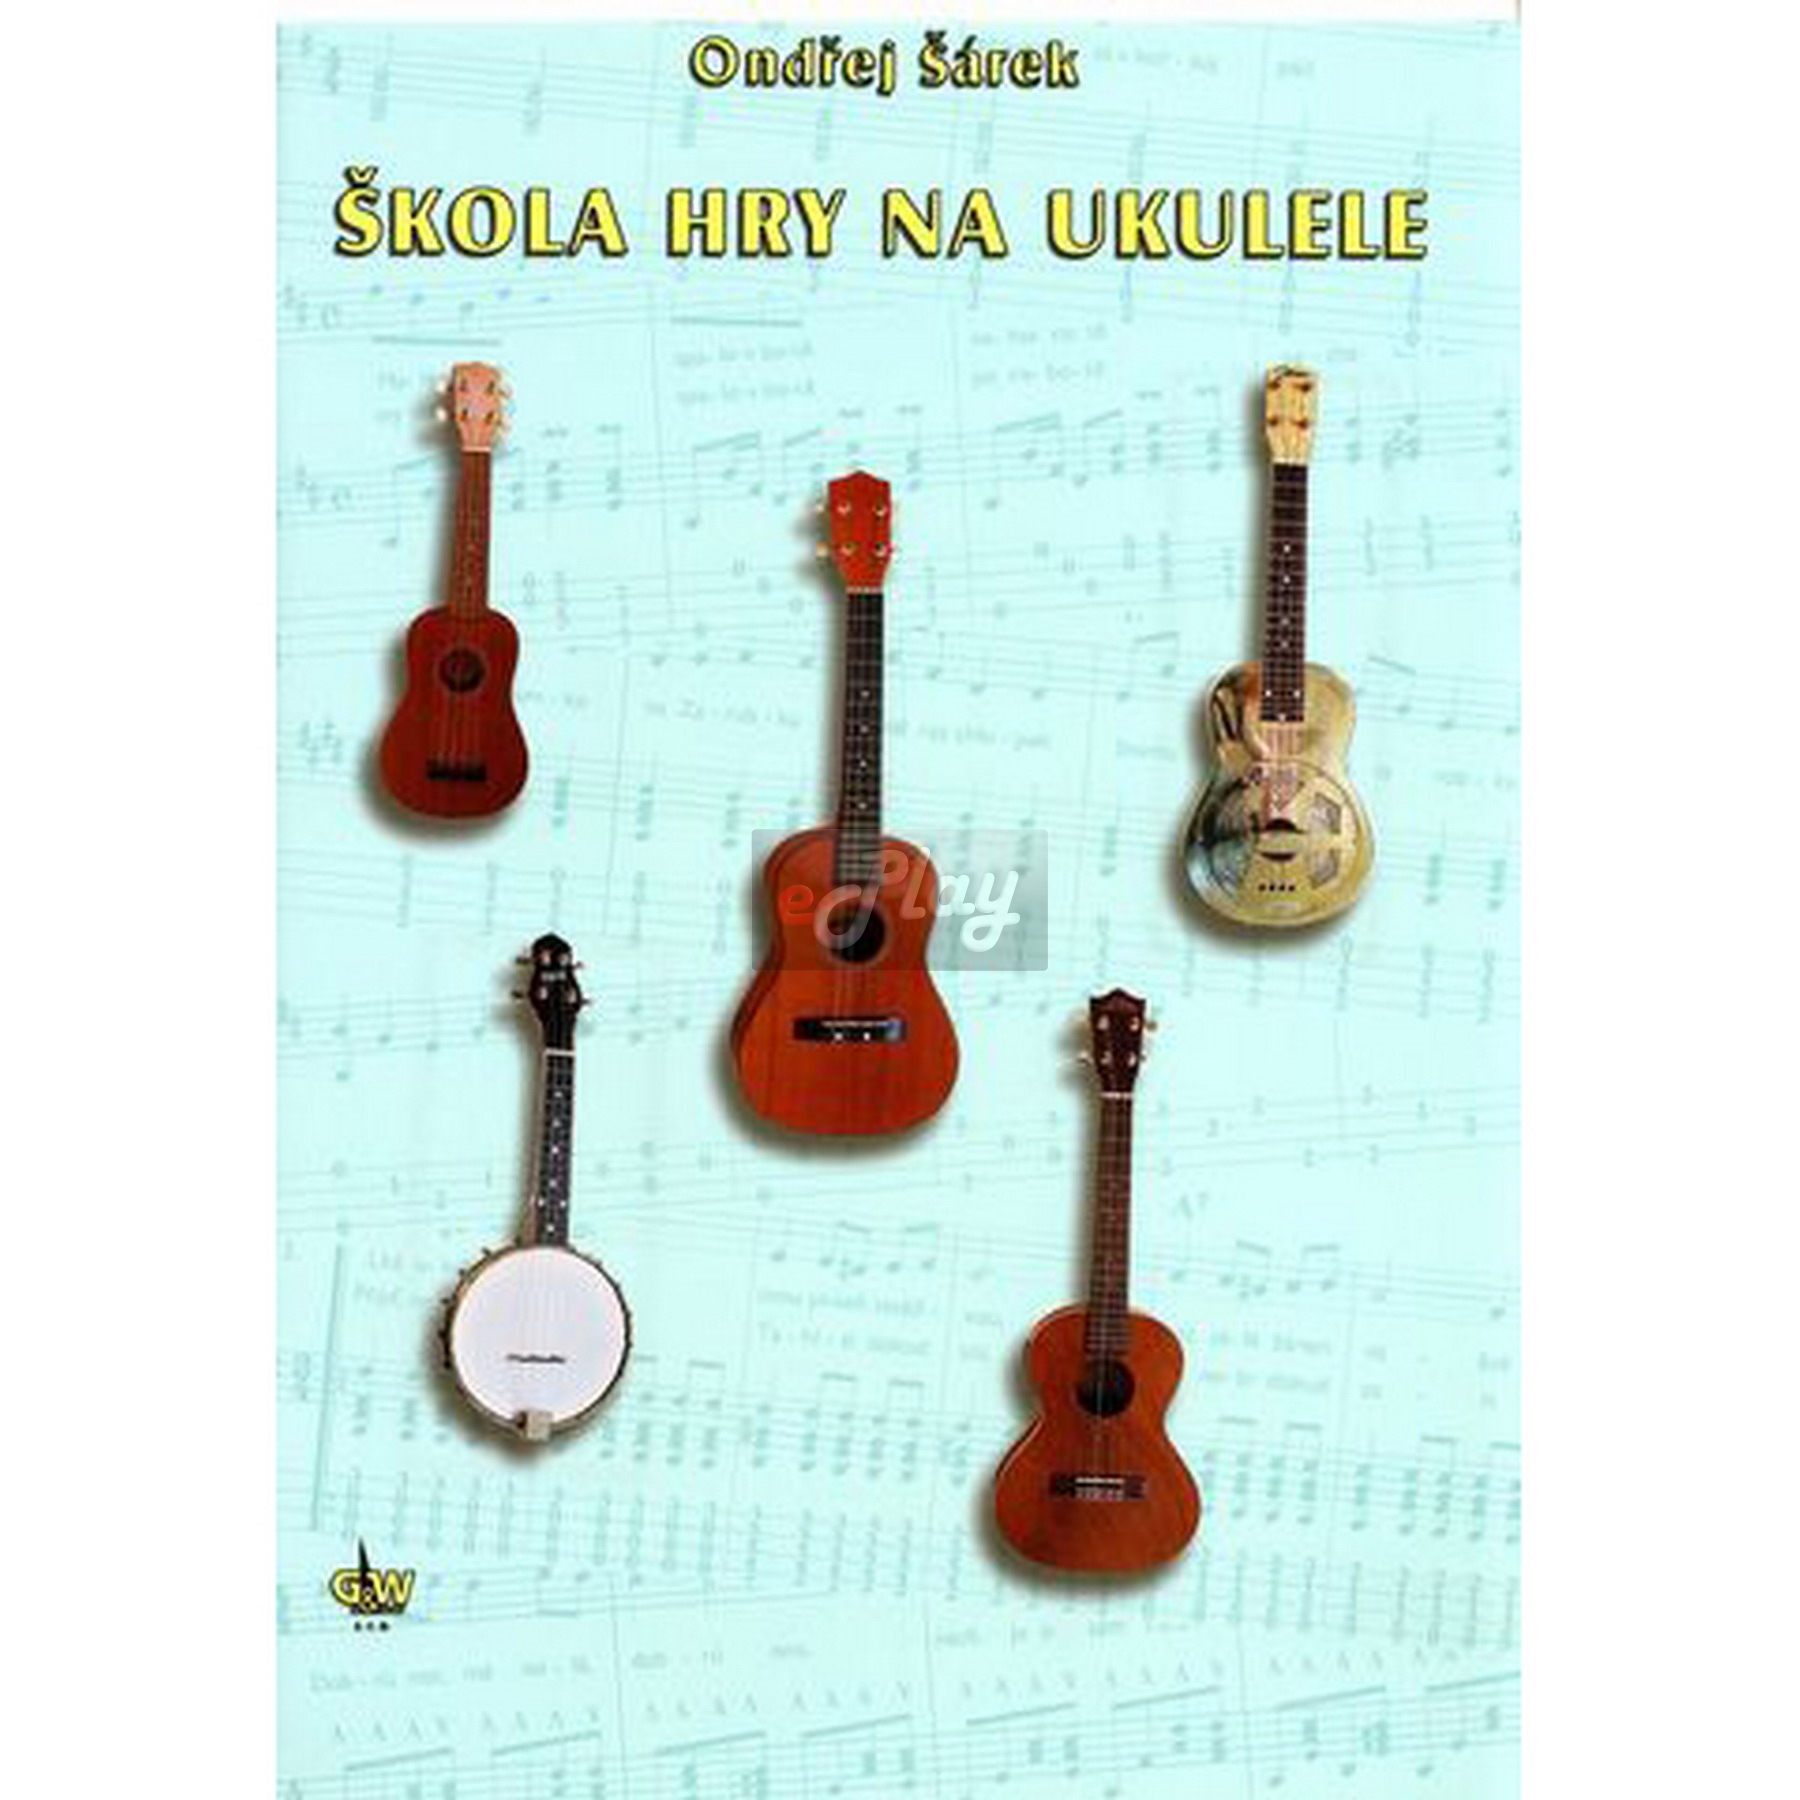 Škola hry na ukulele - Ondřej Šárek | Obrázok 1 | eplay.sk